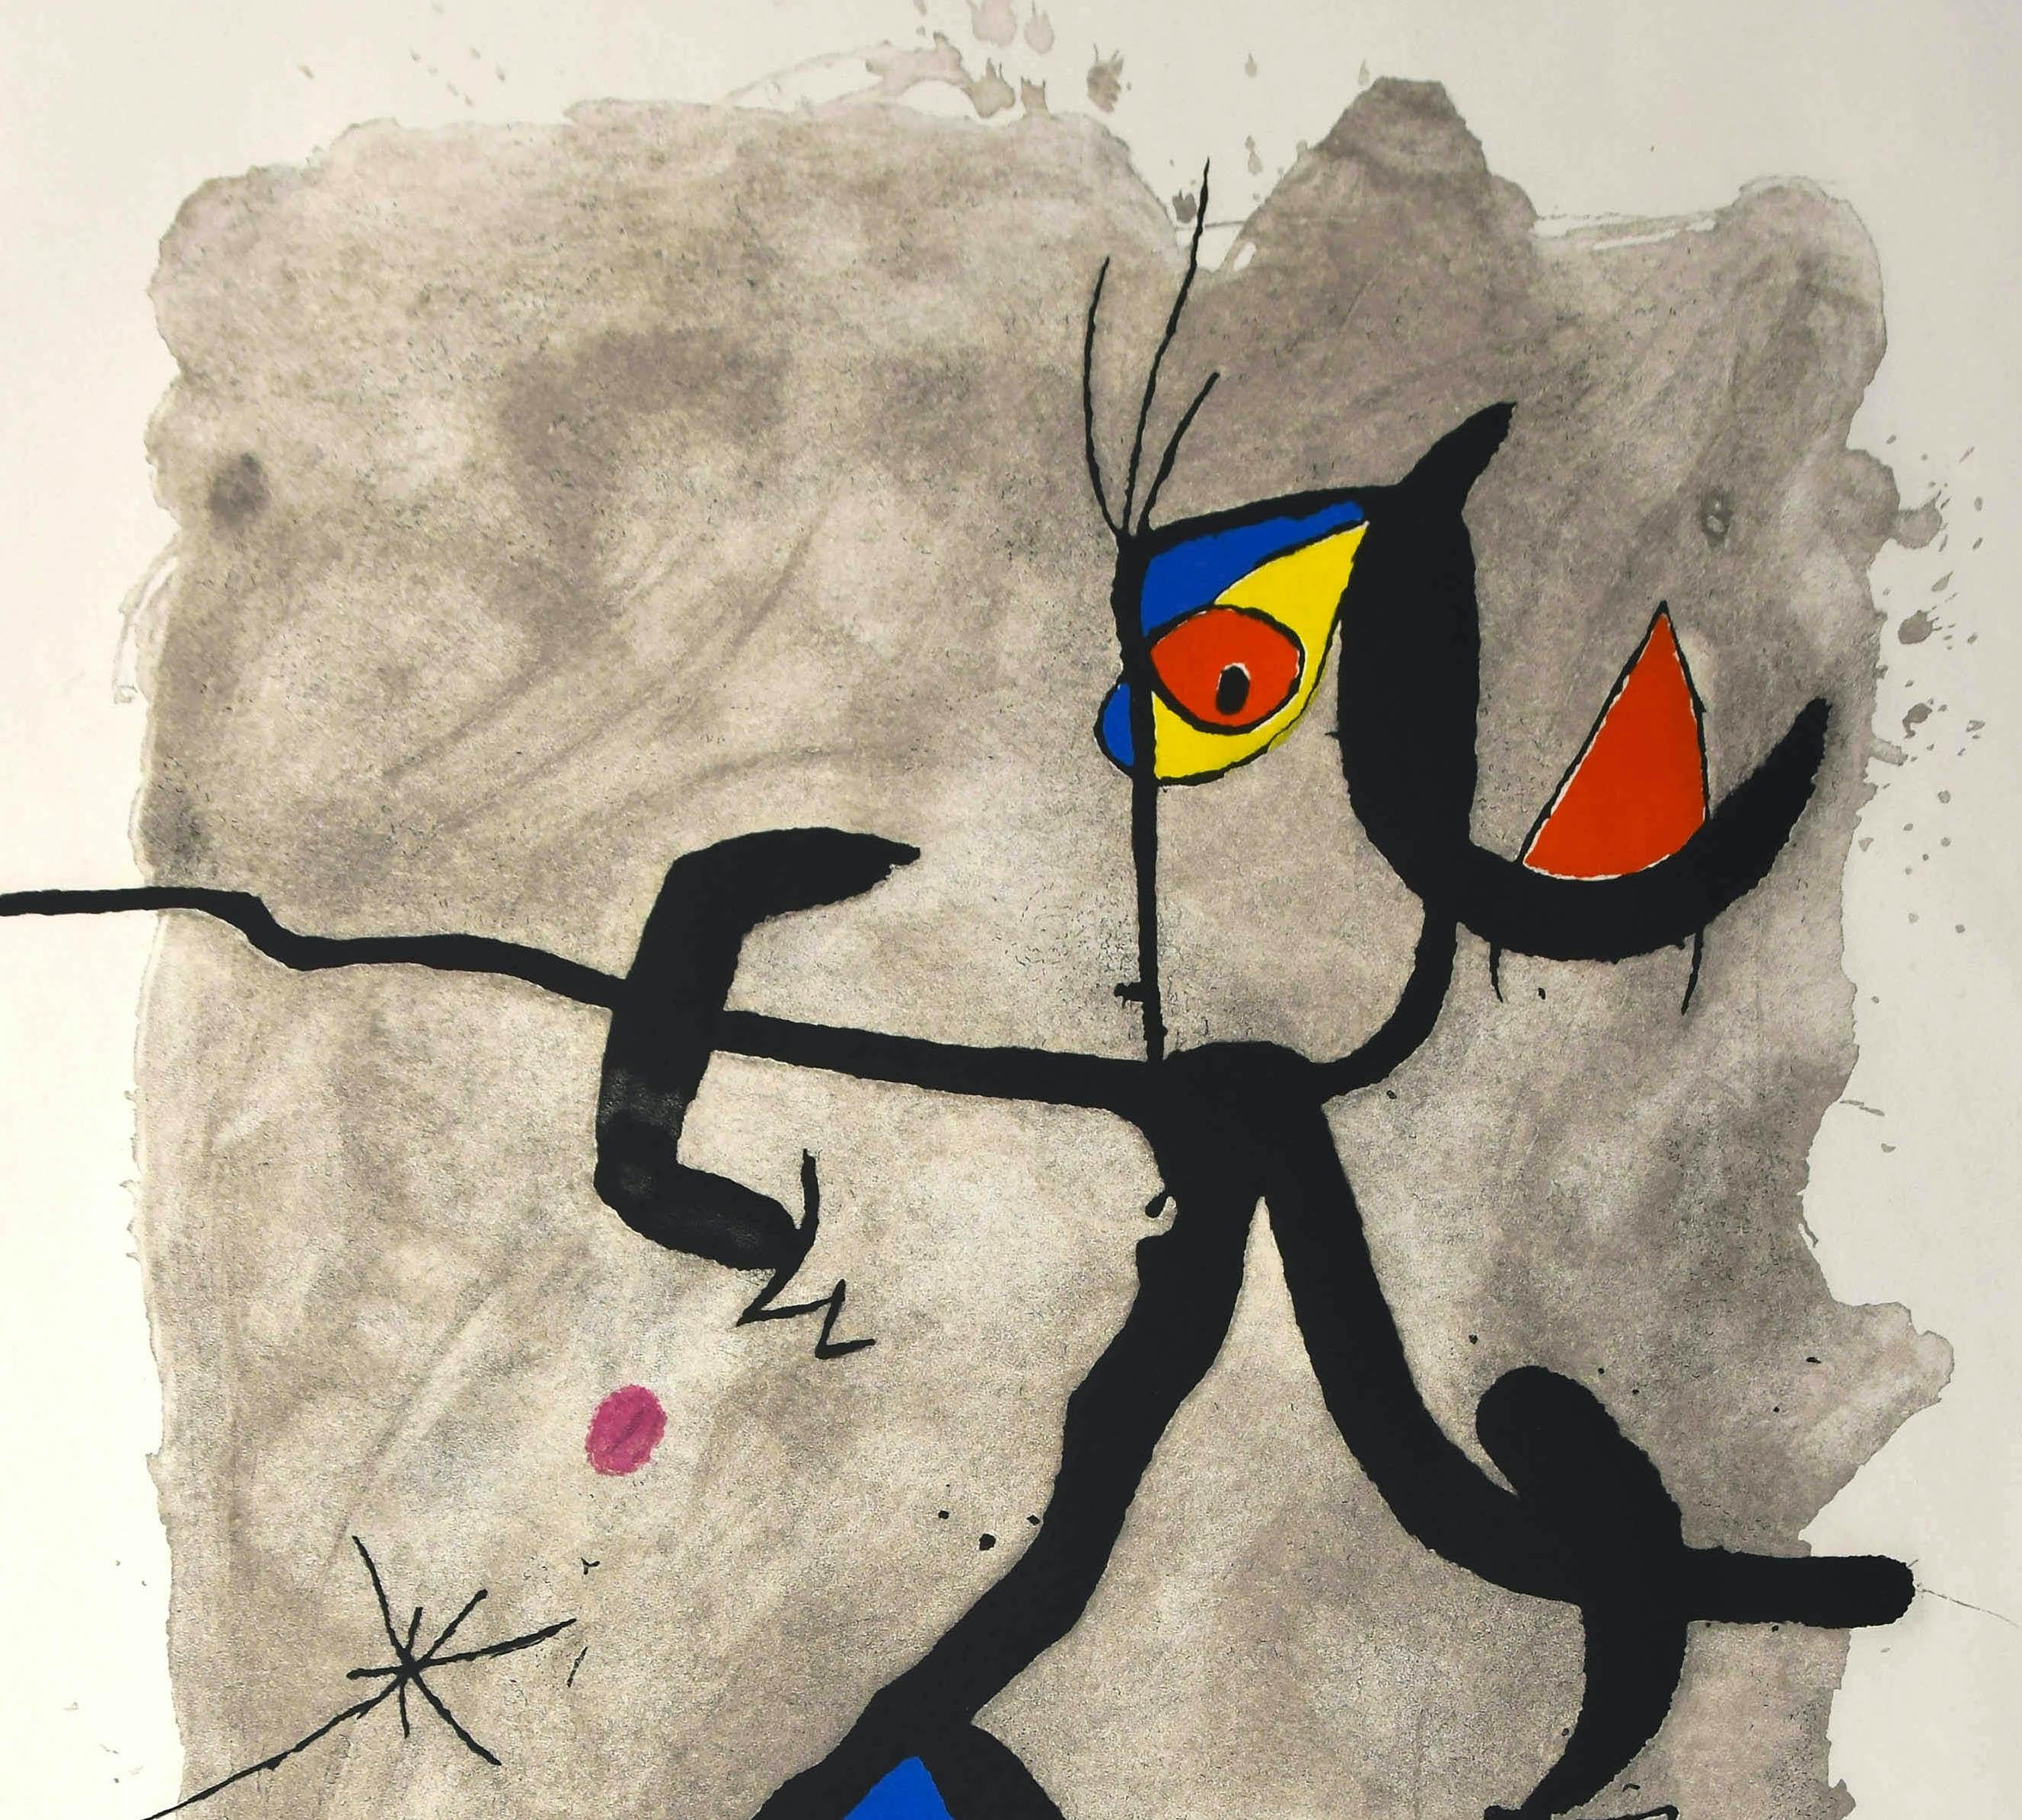 Constellation III - Original Etching by Joan Mirò - 1975 - Print by Joan Miró